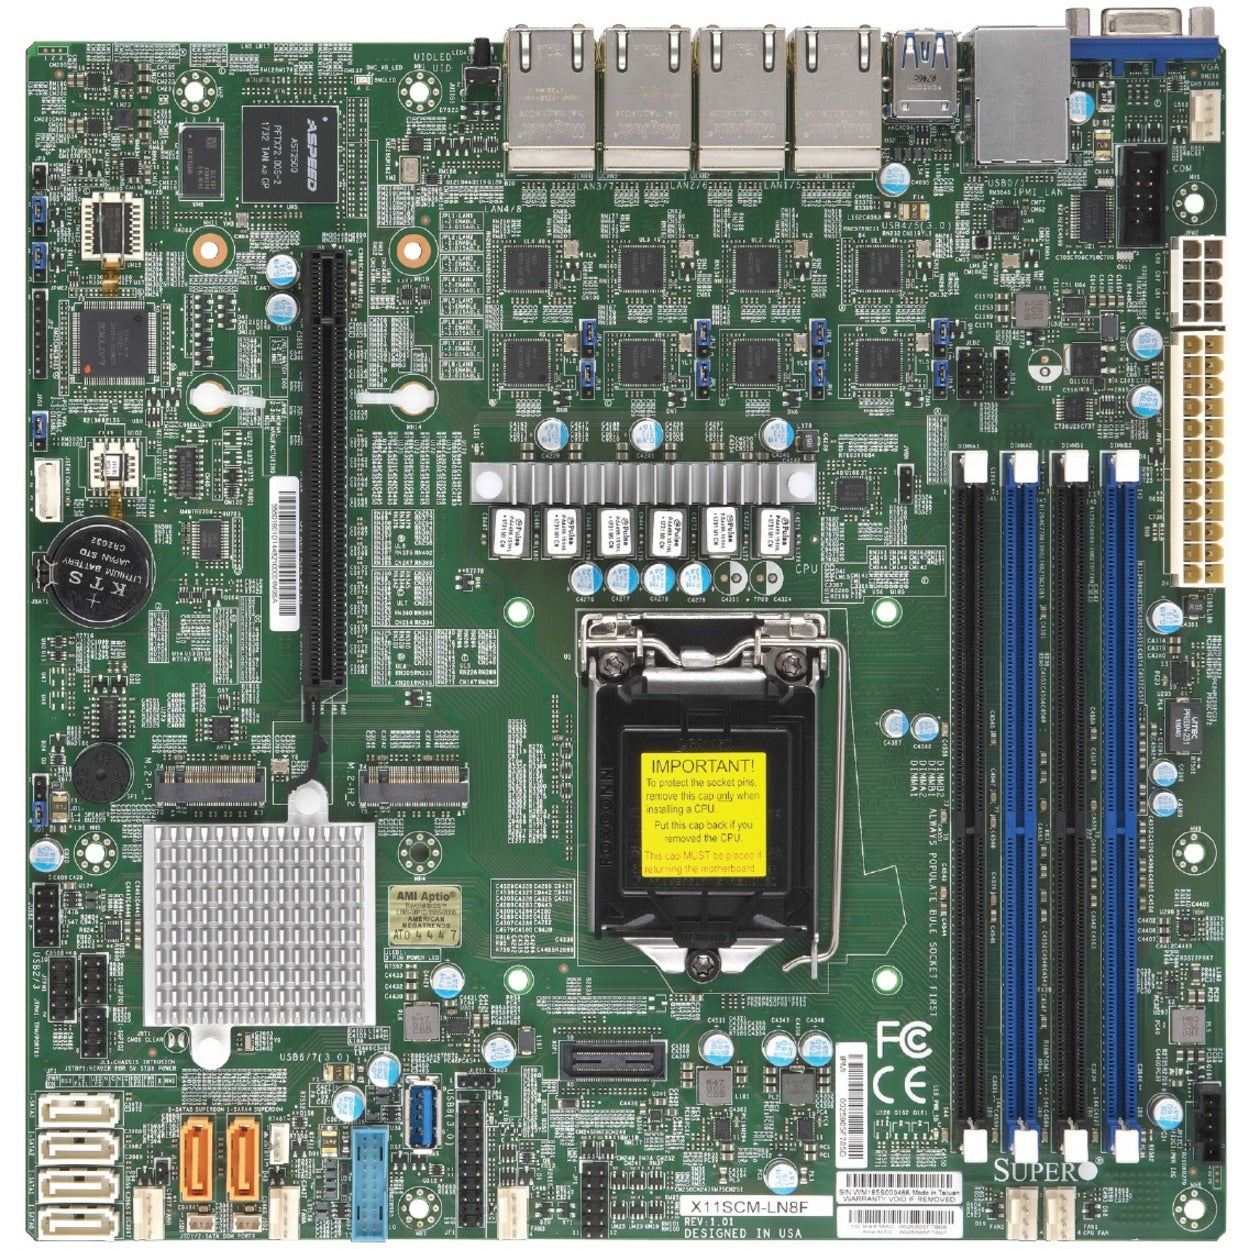 Supermicro MBD-X11SCM-LN8F-O X11SCM-LN8F-O Server Motherboard, Intel C246 Chipset, Micro ATX